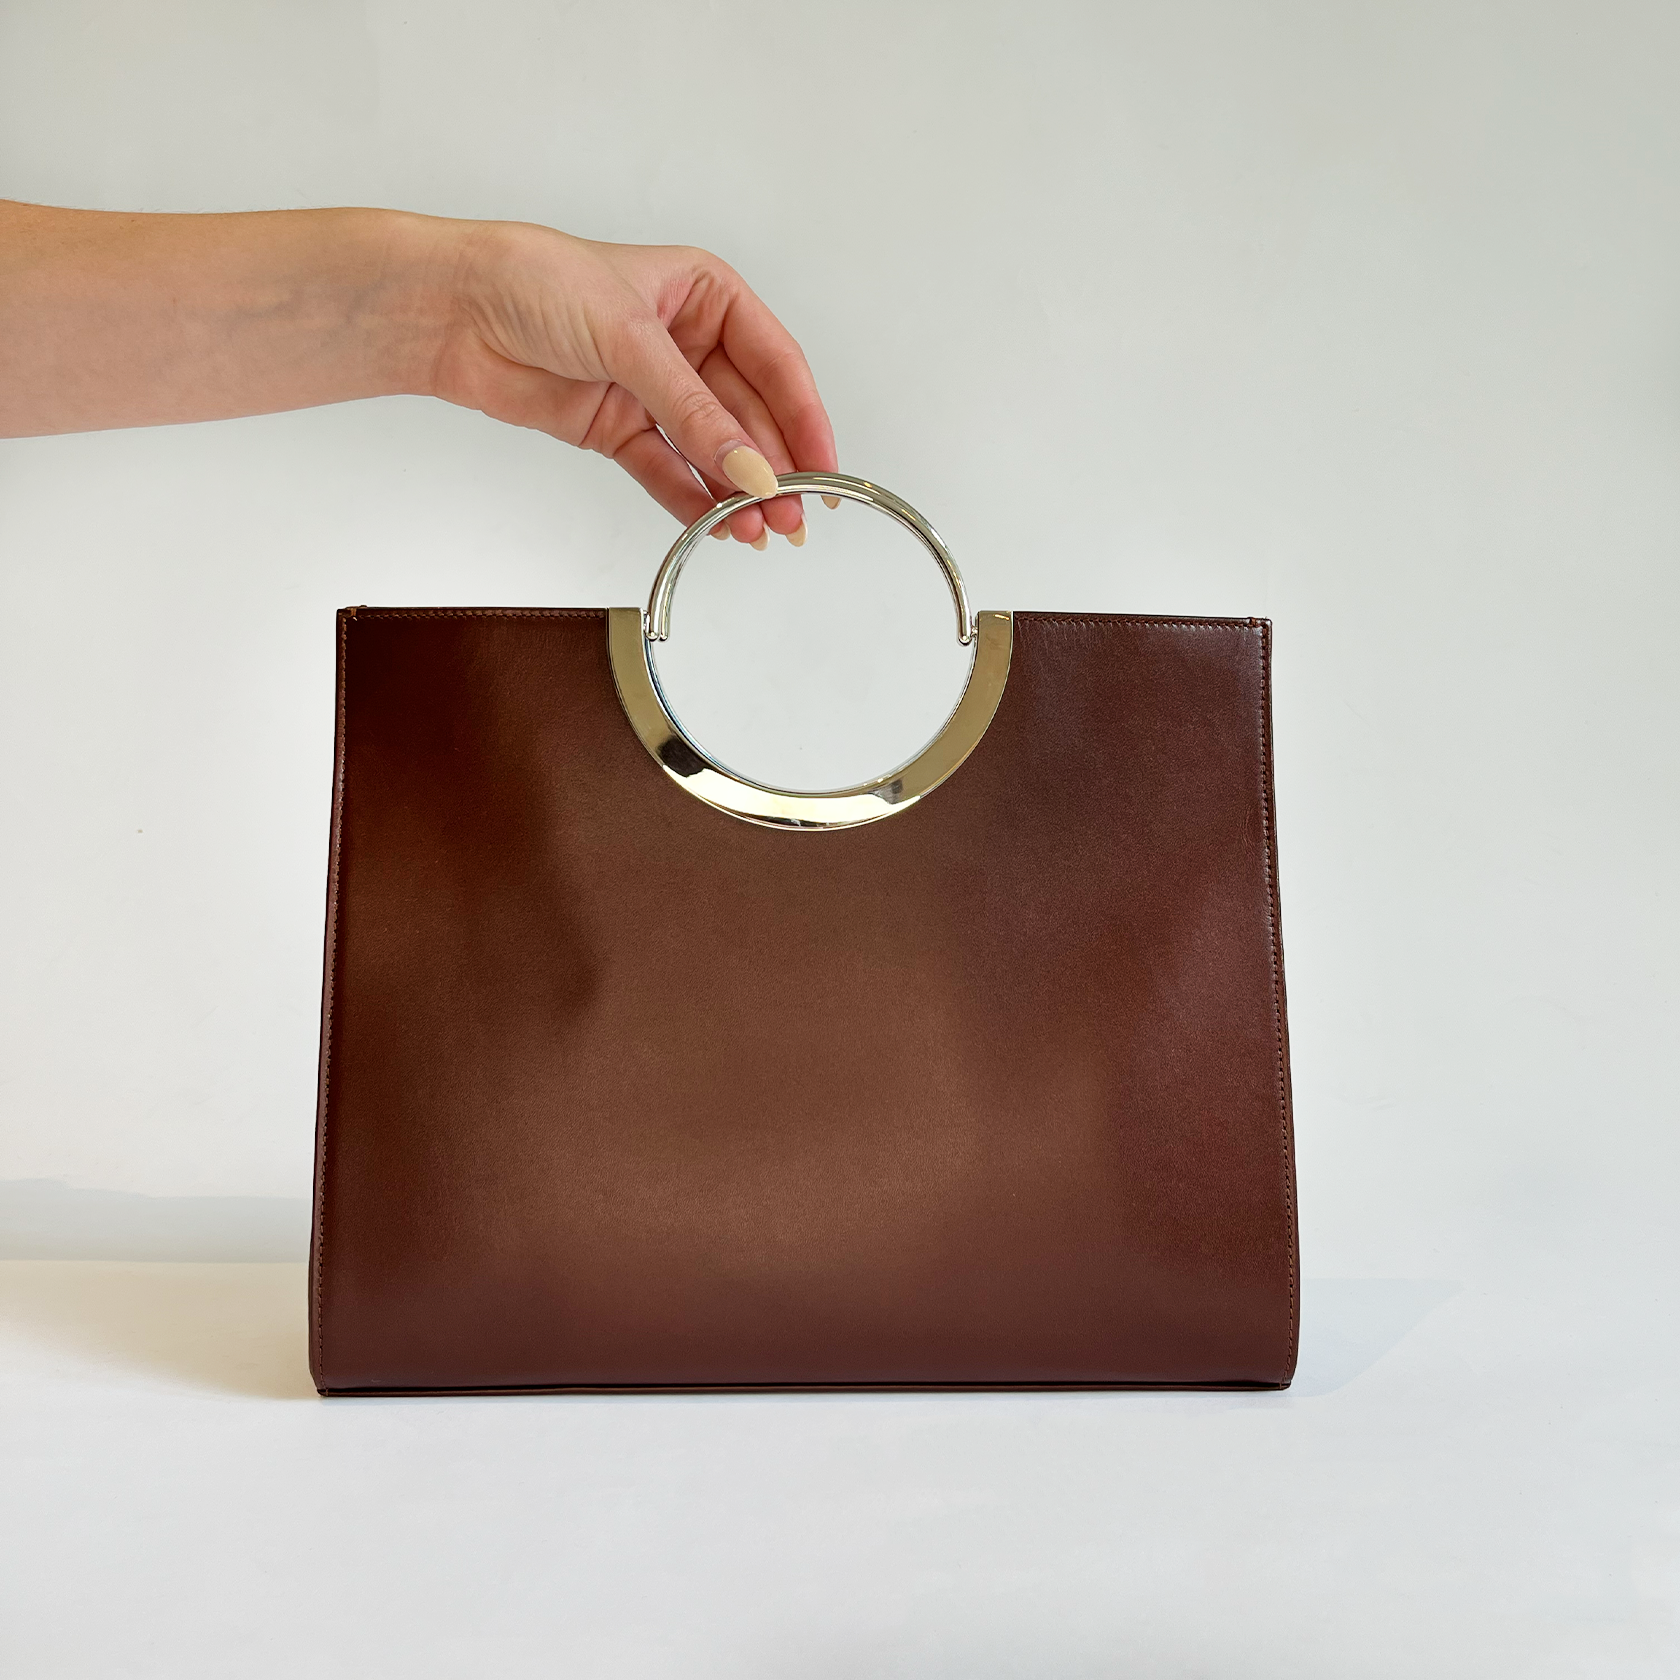 Dries Van Noten Metal Ring Leather Clutch Bag